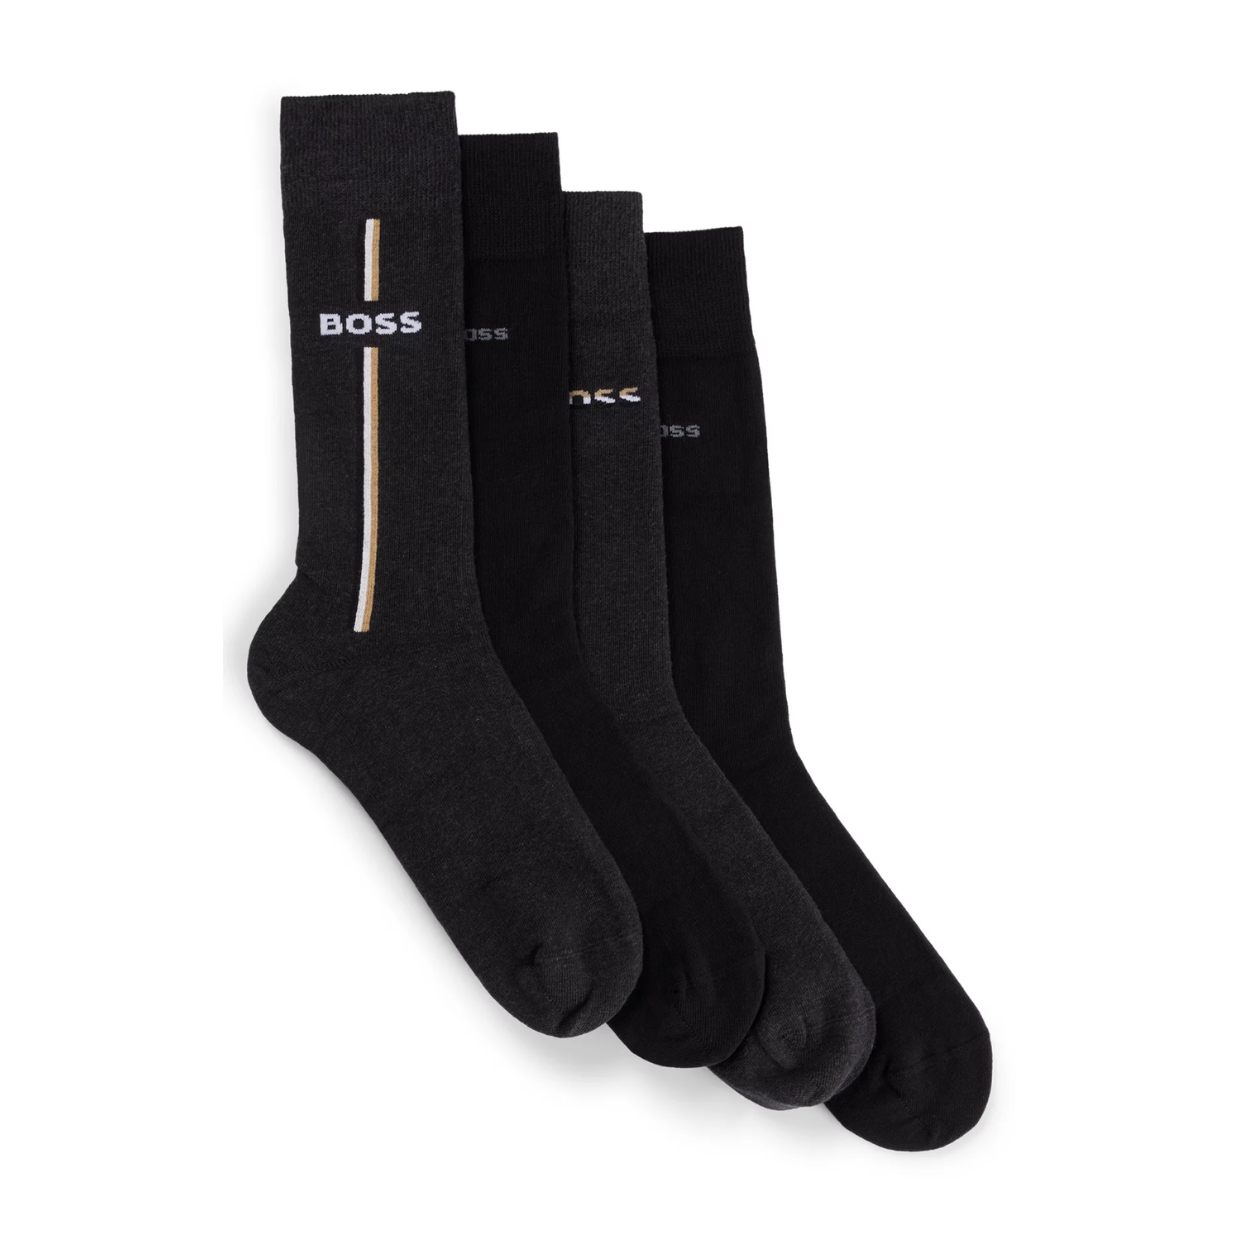 BOSS Four-Pack Socks Gift Set